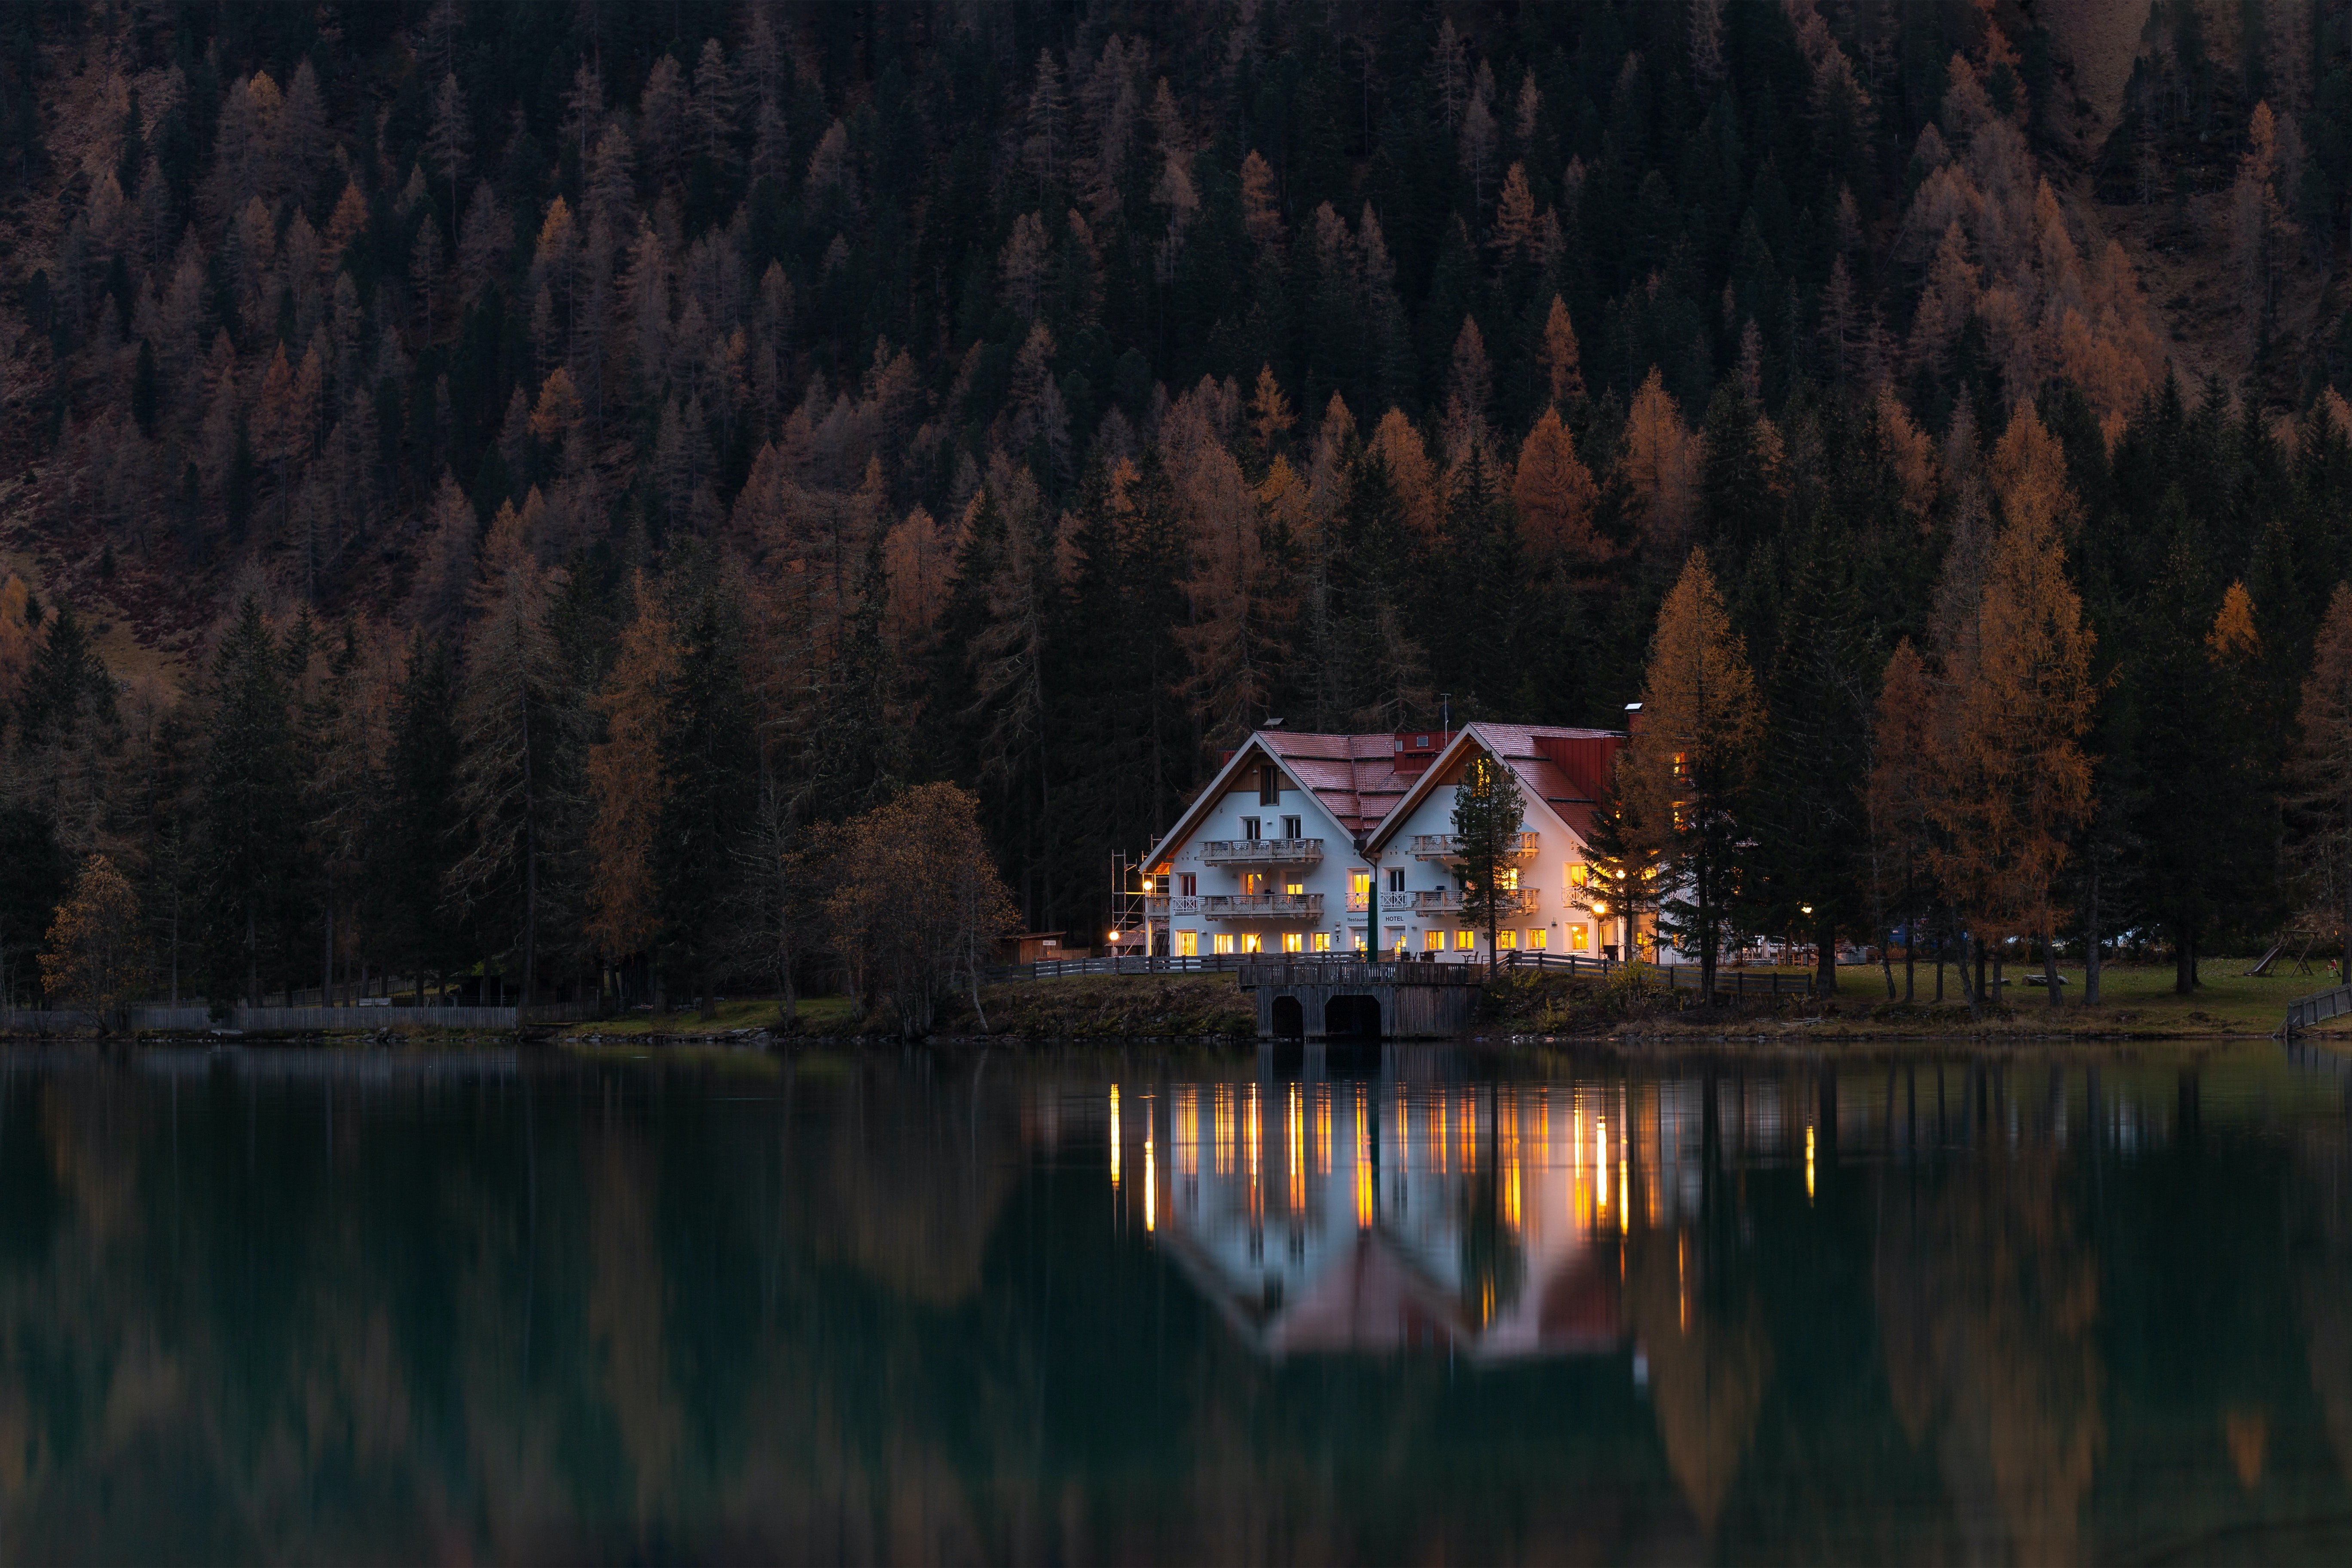 Patrick bemerkte, dass auf der anderen Seite des Sees ein Herrenhaus gebaut worden war. | Quelle: Pexels